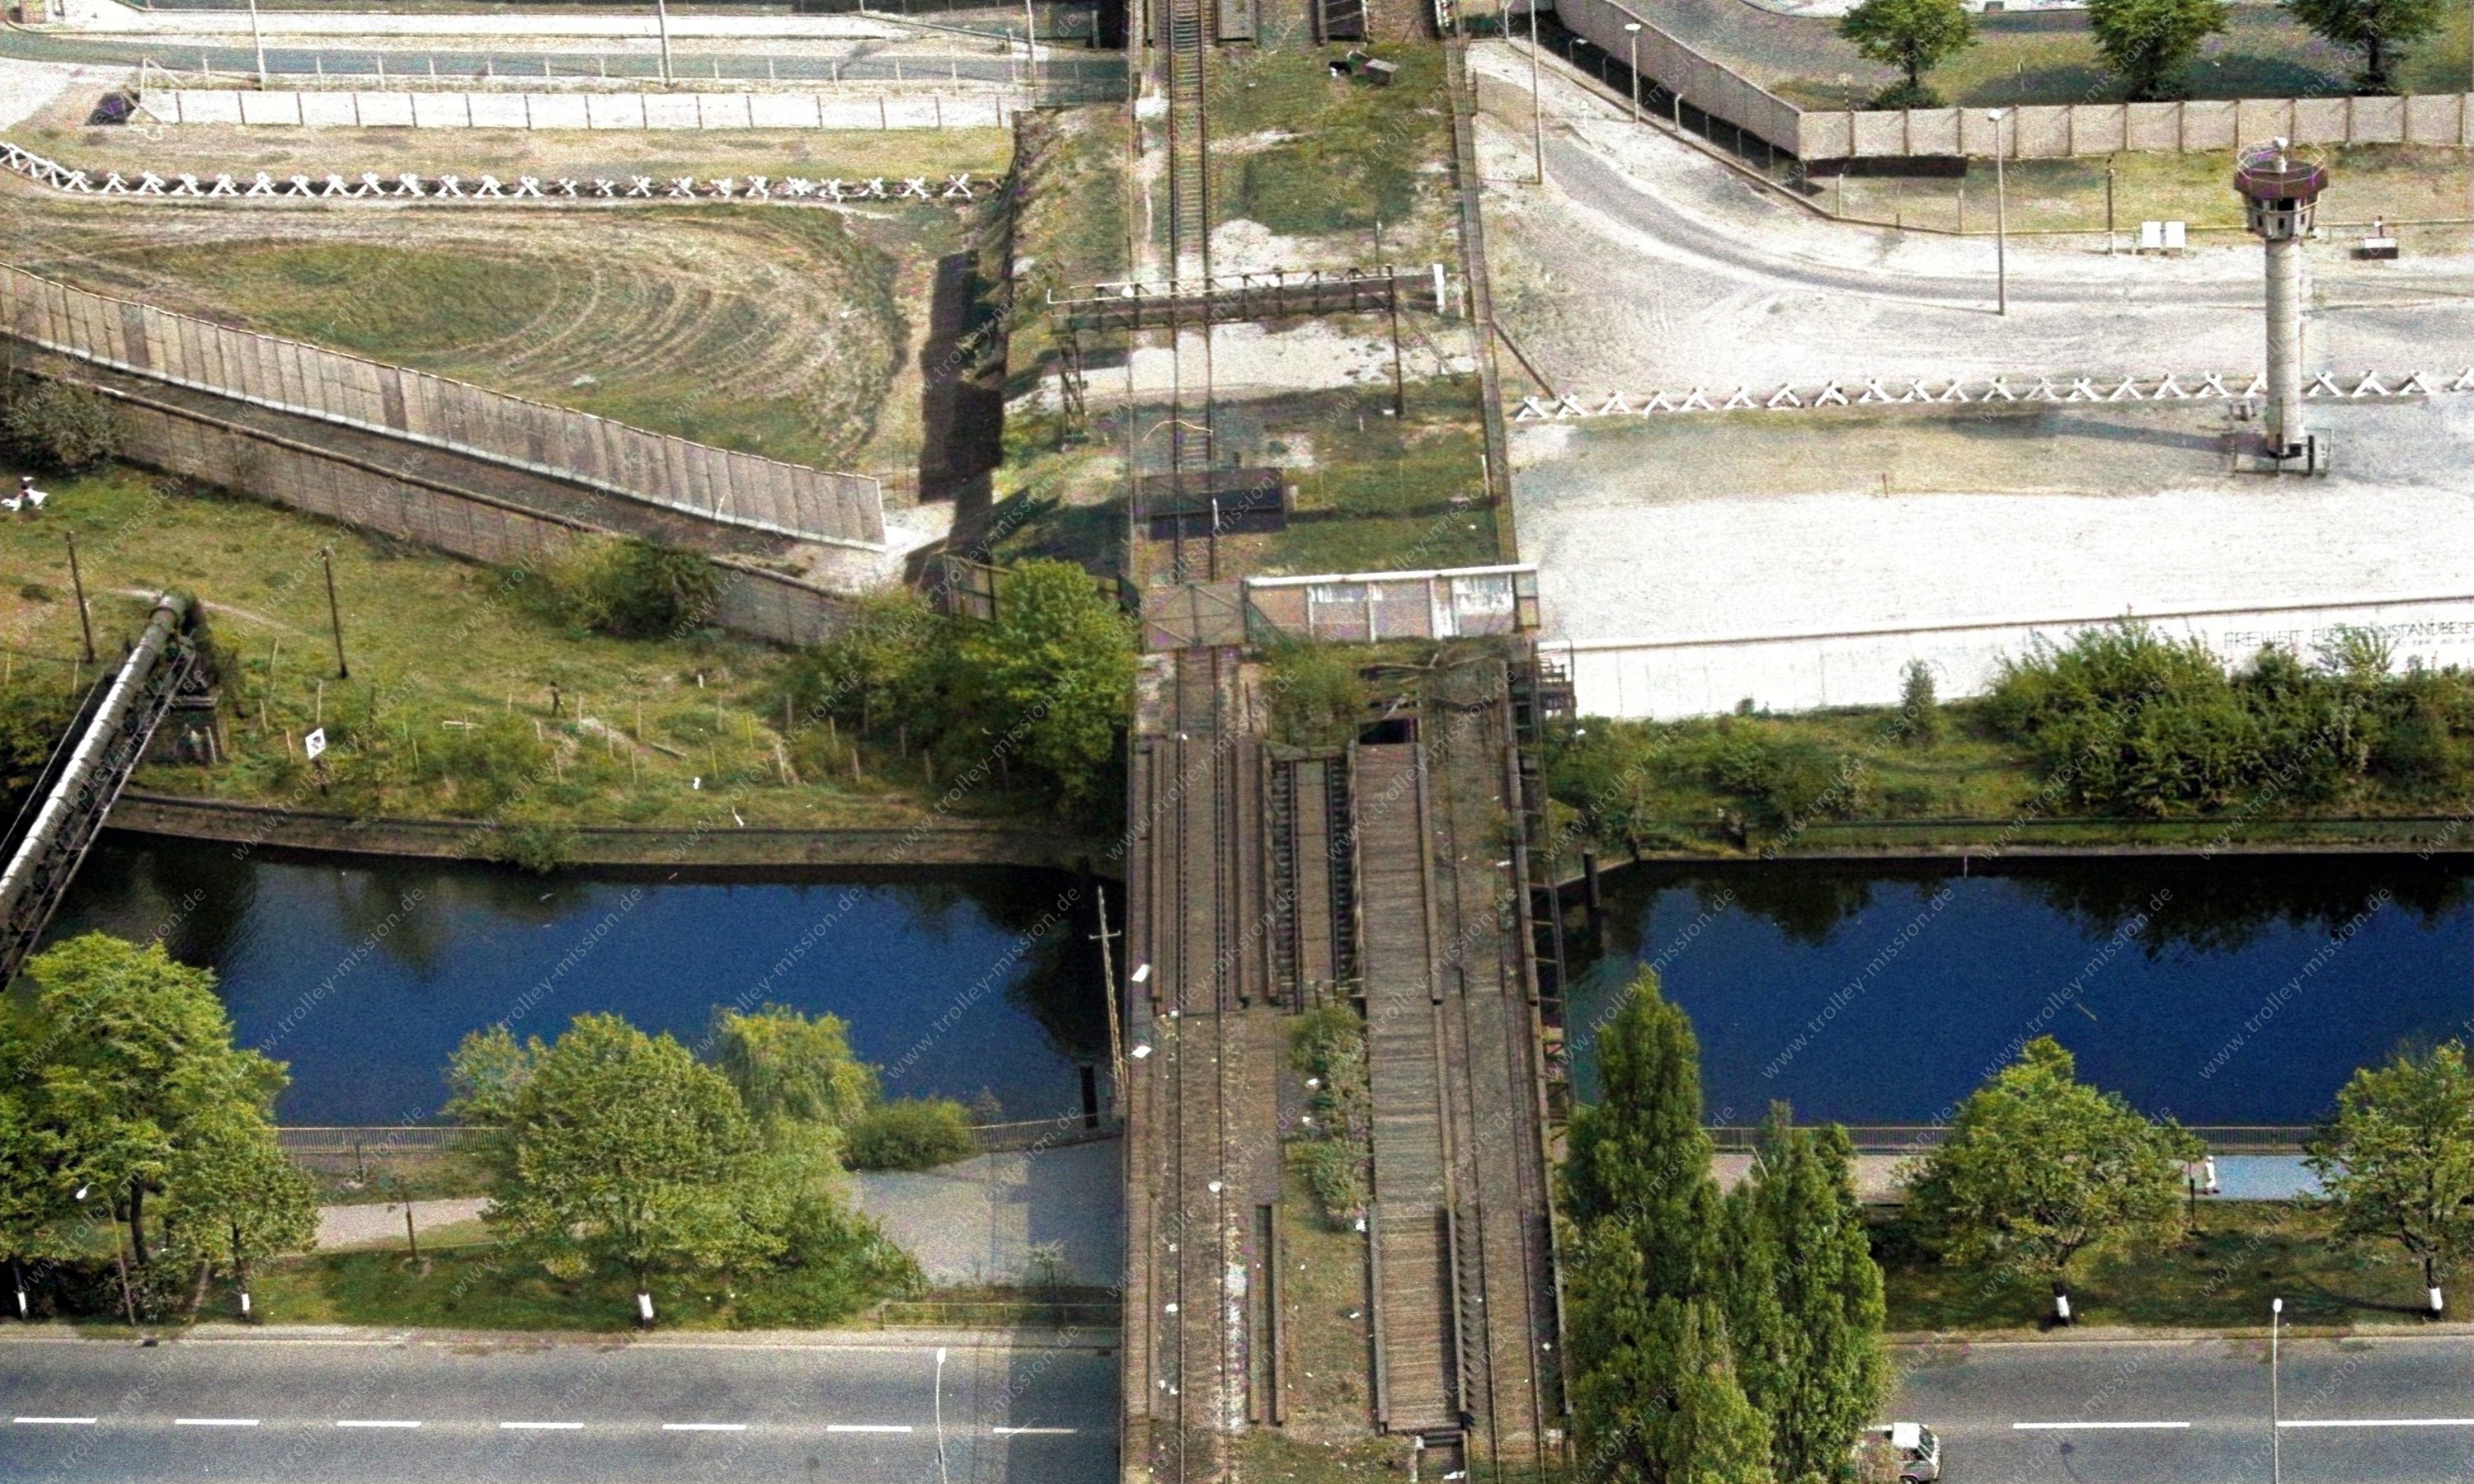 Das Luftbild, das am 12. Mai 1982 aufgenommen wurde, zeigt die alte Eisenbahnbrücke, die sogenannte Görlitzer Brücke, über den Landwehrkanal zwischen dem Görlitzer Ufer in Berlin-Kreuzberg (unten) und dem Wiesenufer in Berlin-Treptow (oben).